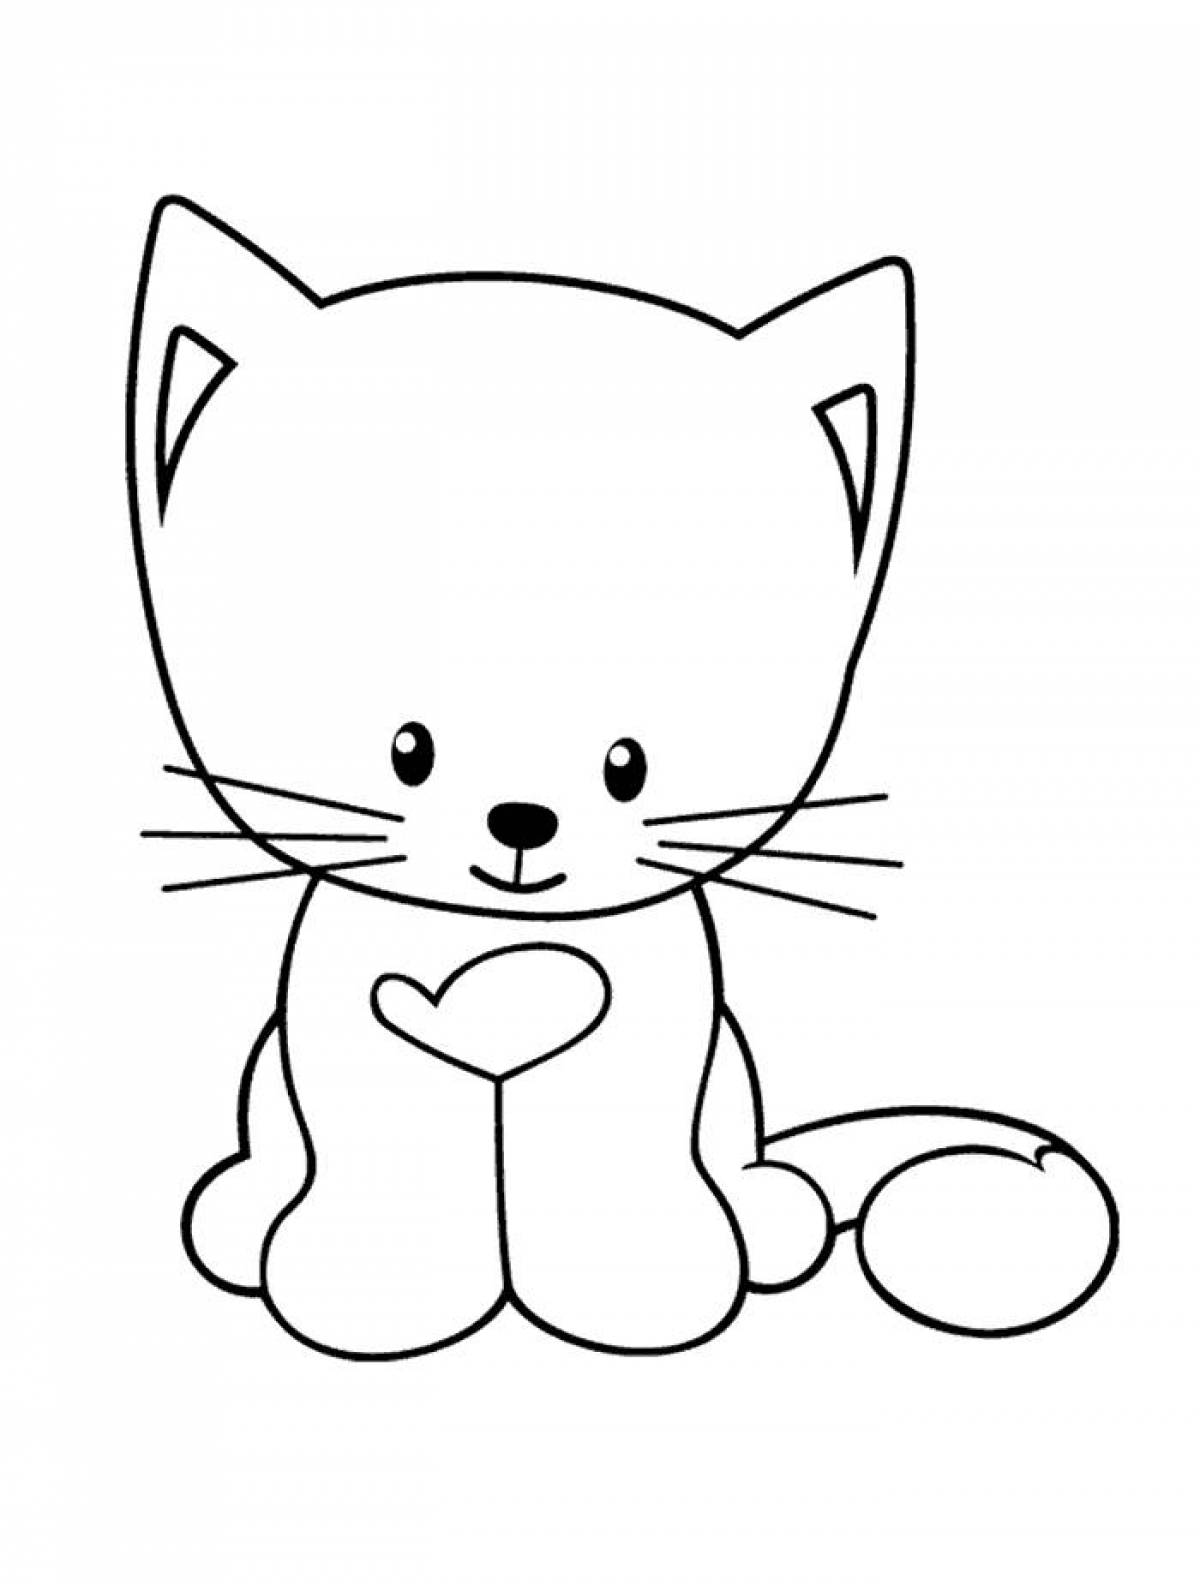 Анимированная раскраска кошка для детей 3-4 лет